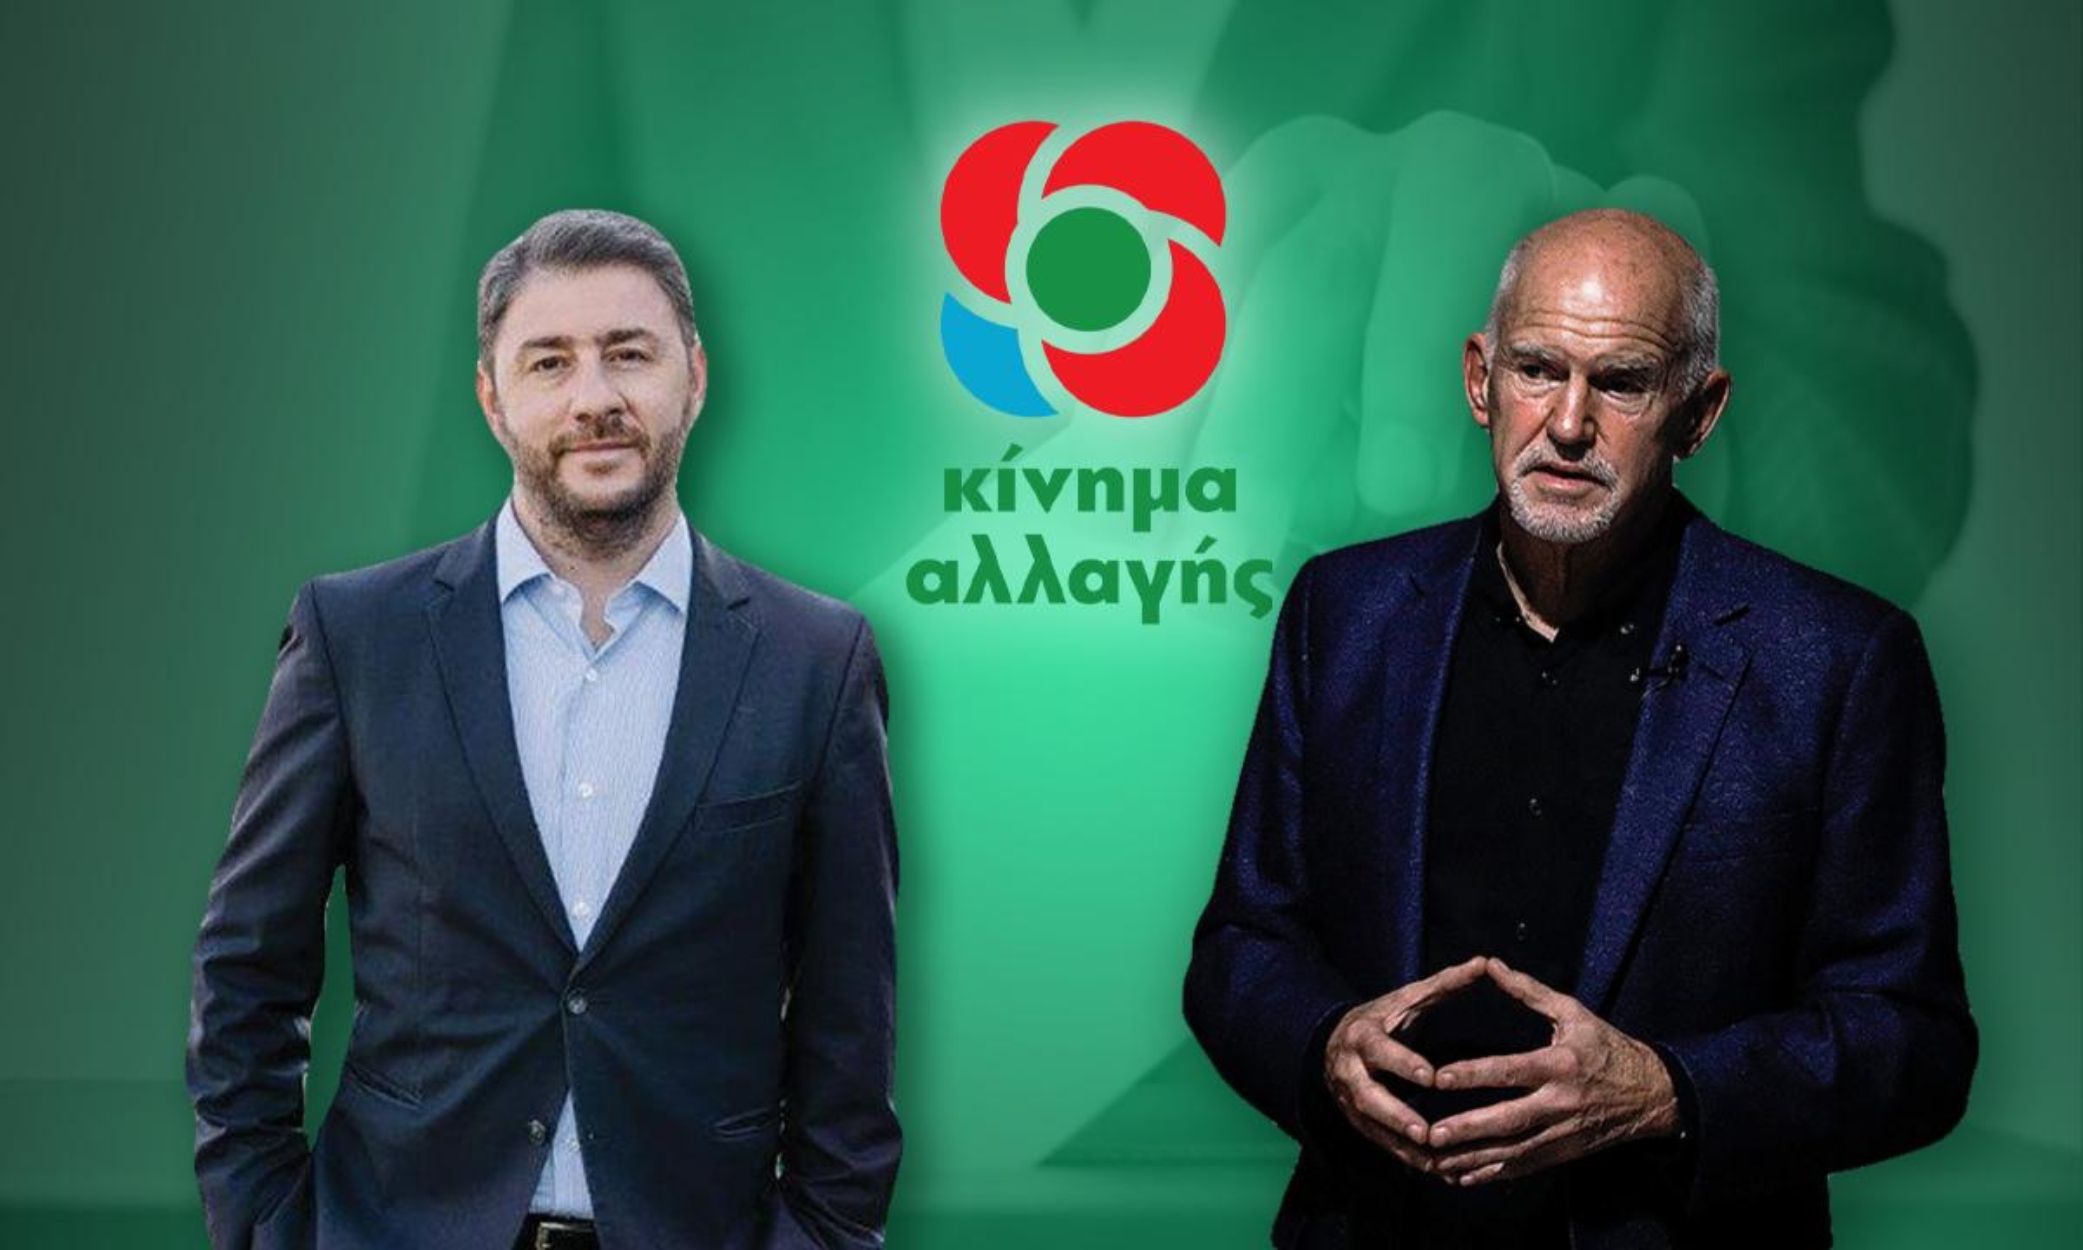 Ανδρουλάκης – Παπανδρέου στο pagenews.gr: Οι δύο «μονομάχοι» λίγο πριν το δεύτερο γύρο | Ειδησεις | Pagenews.gr